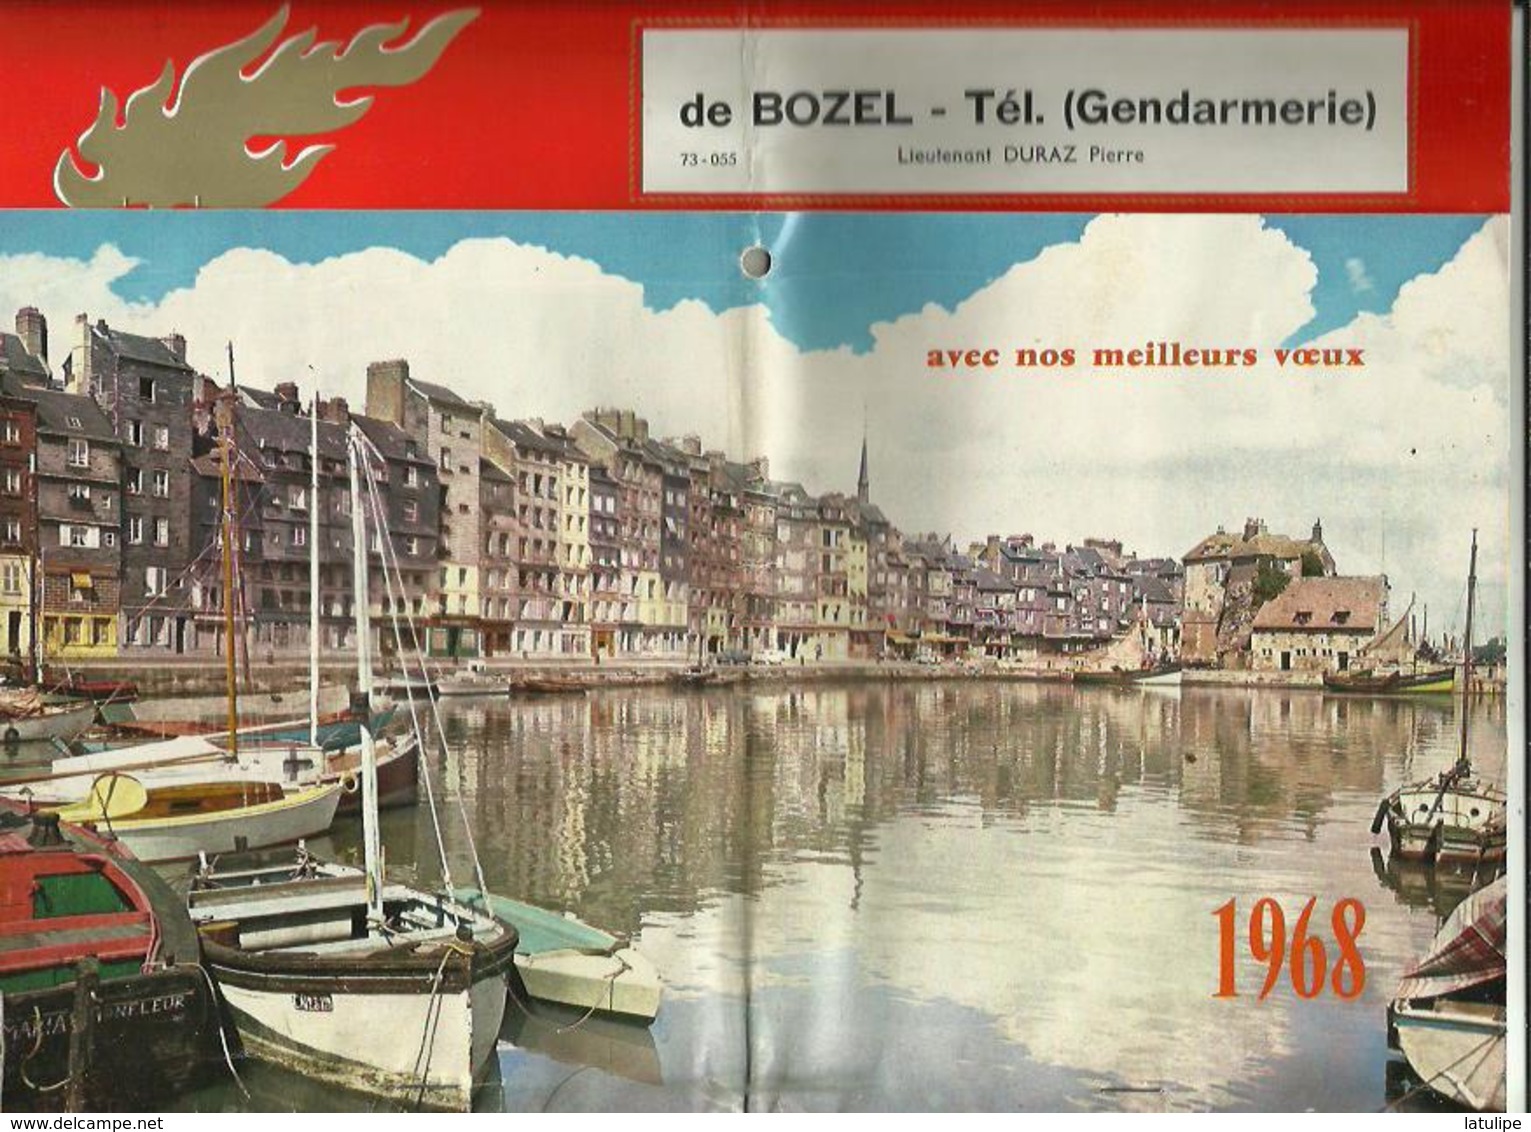 Calendrier  G-F  Des Pompiers  De  1968-de BOZEL  73 _Pages Complètes Avec Mes Meilleurs Voeux - Big : 1961-70